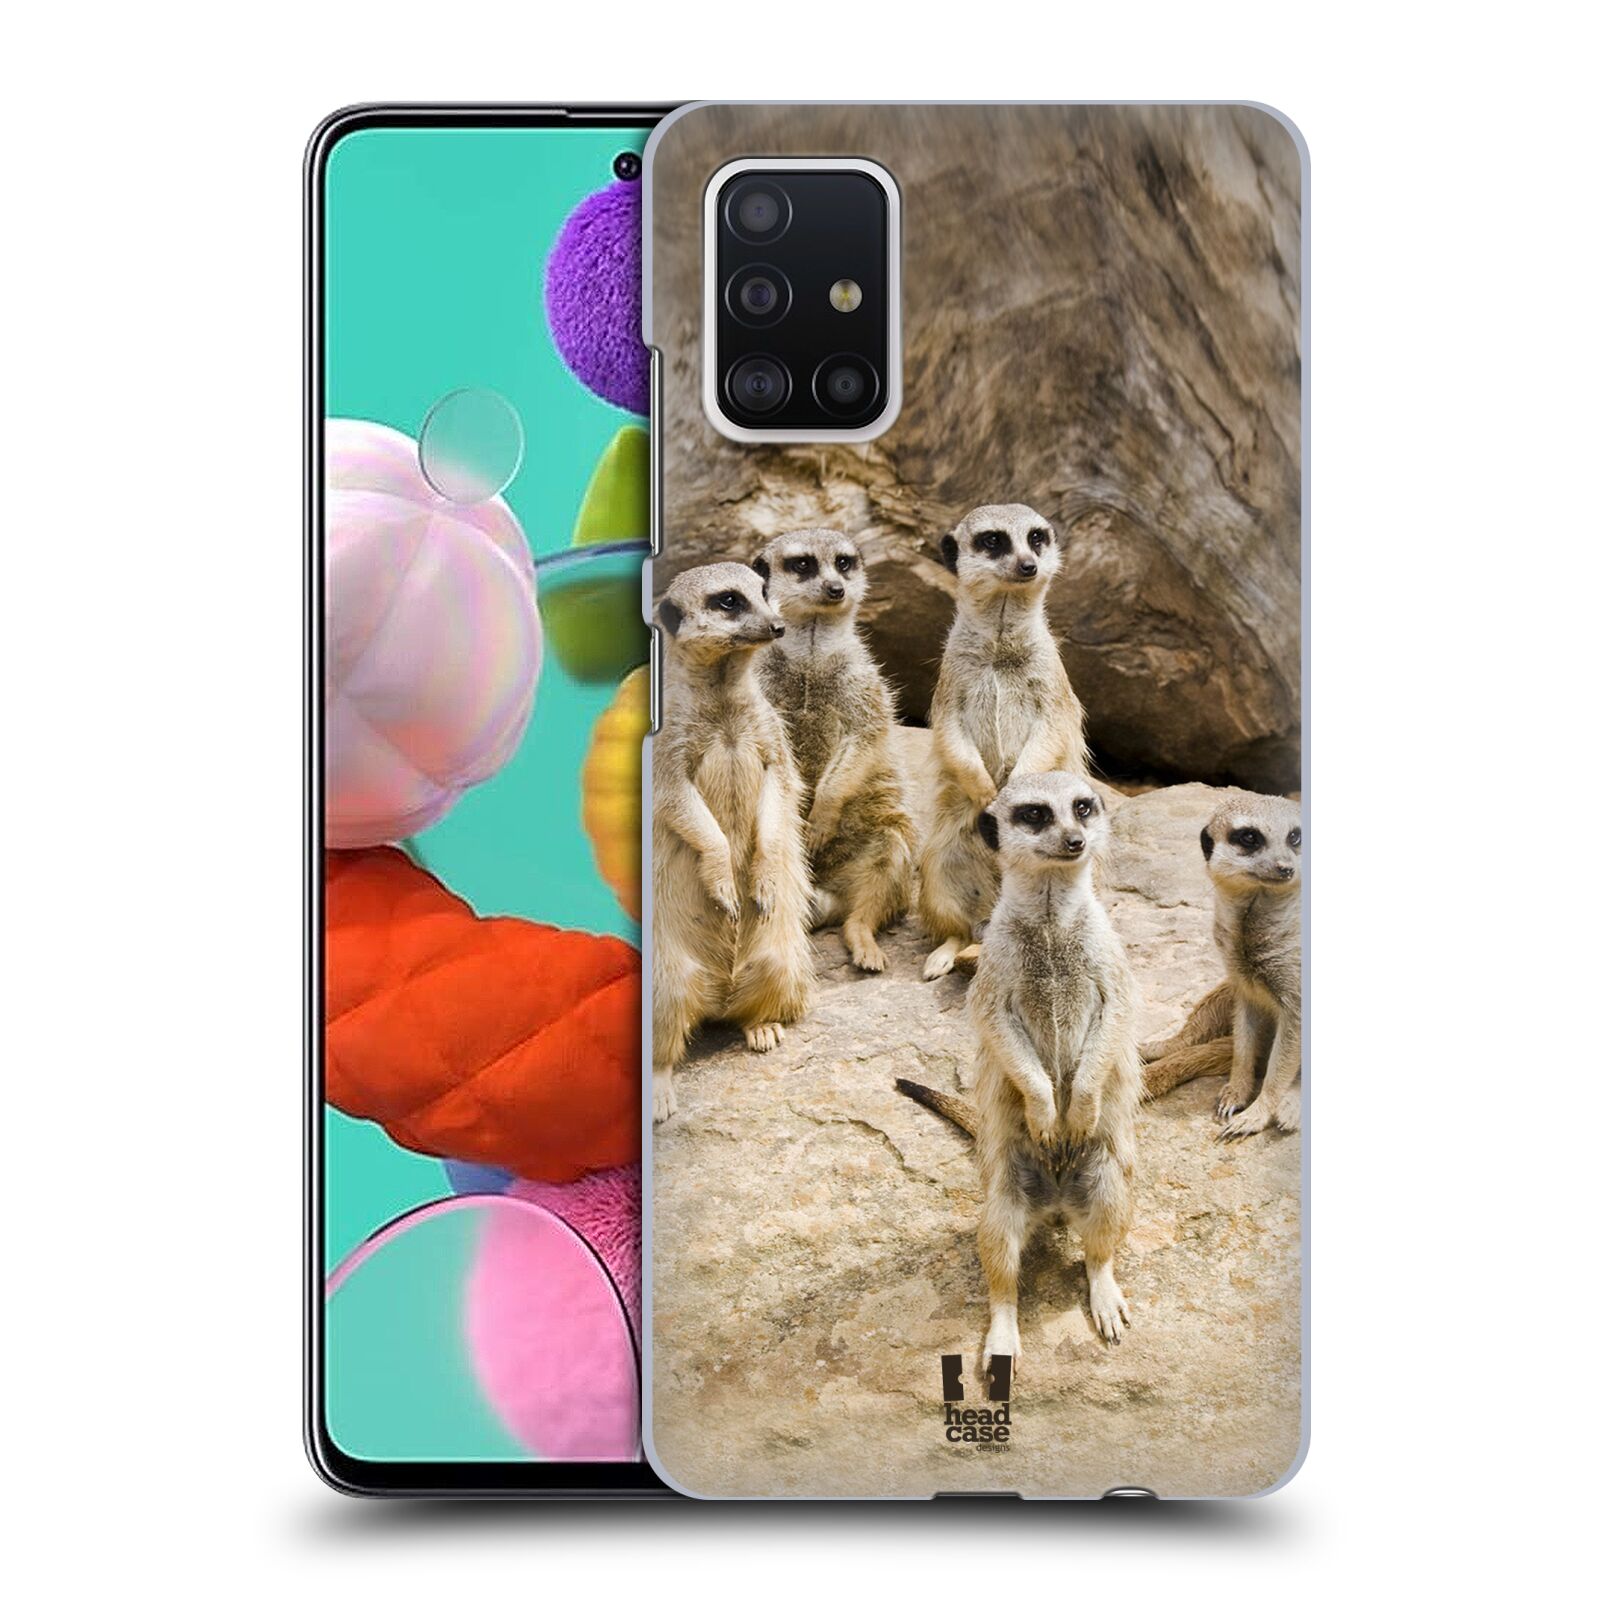 Zadní obal pro mobil Samsung Galaxy A51 - HEAD CASE - Svět zvířat roztomilé surikaty